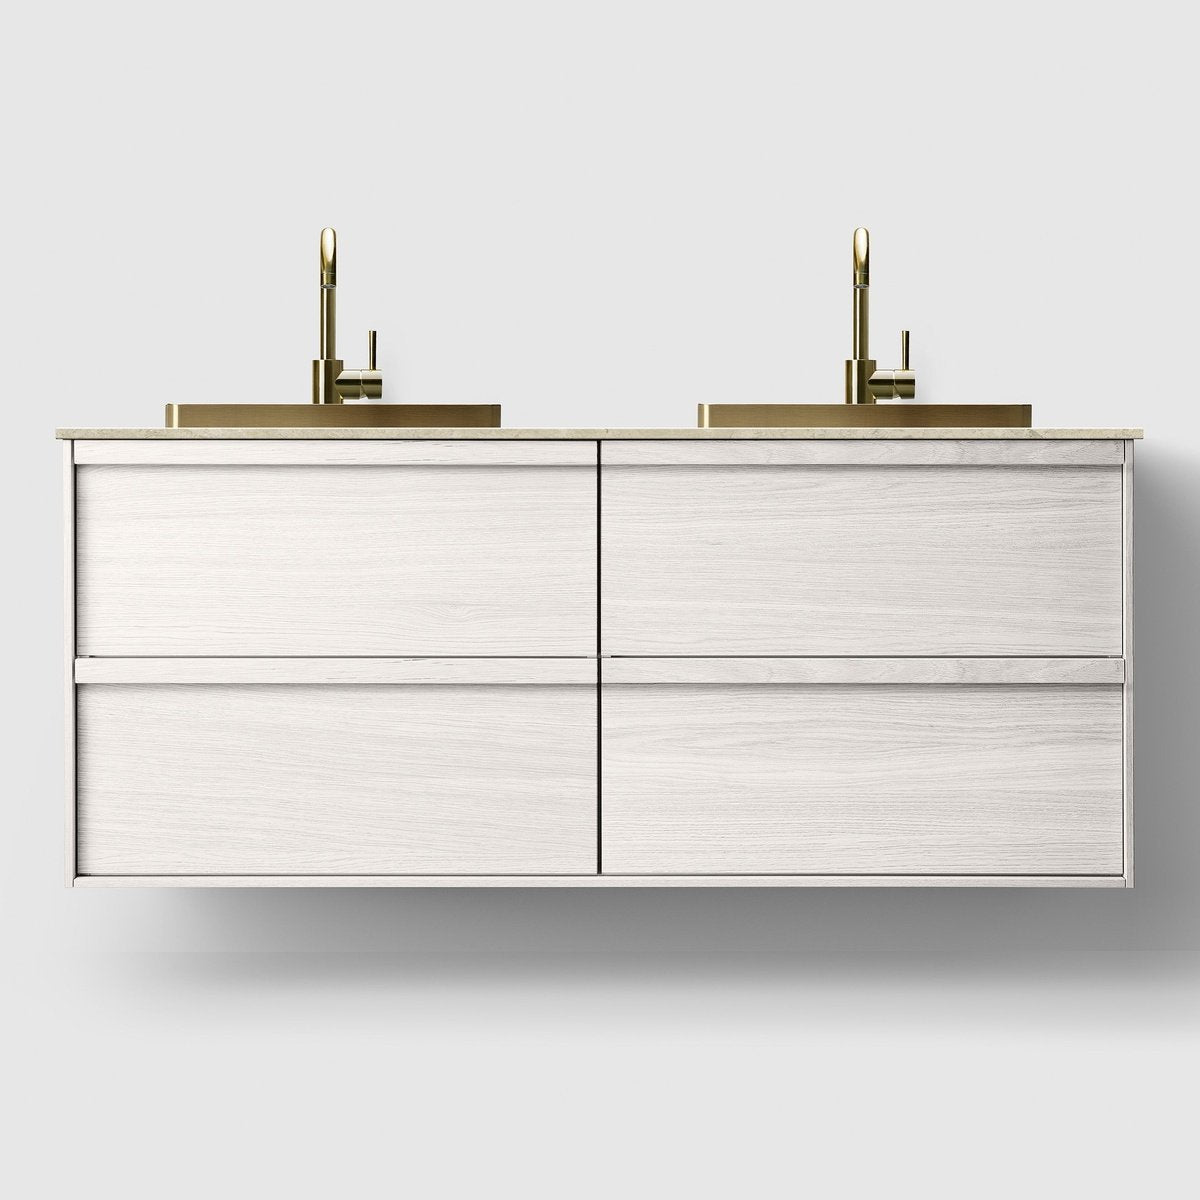 Se HAVEN H2/140 badeværelsesmøbel - Norrvange beige bordplade og håndvask - White Wood hos Bad&Design